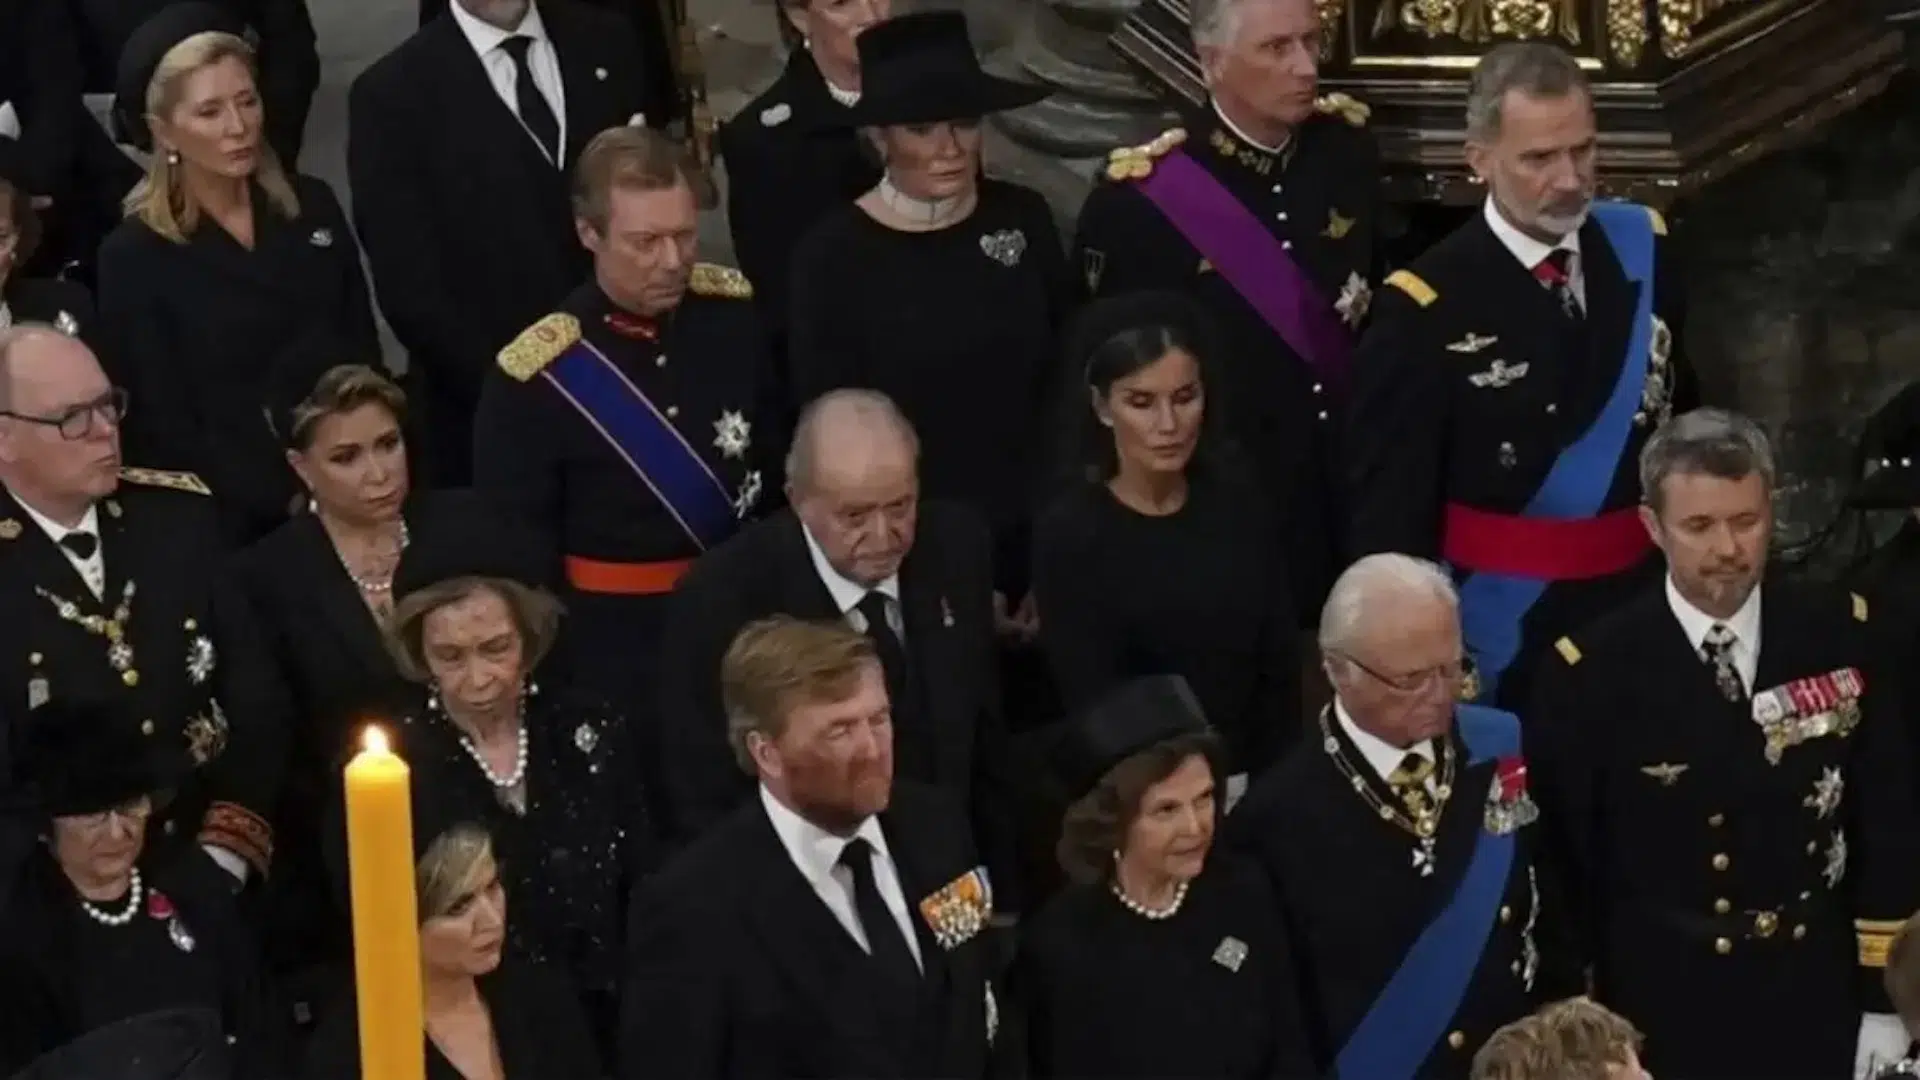 Juan Carlos Familia Real Espanhola Funeral Rainha Isabel Ii